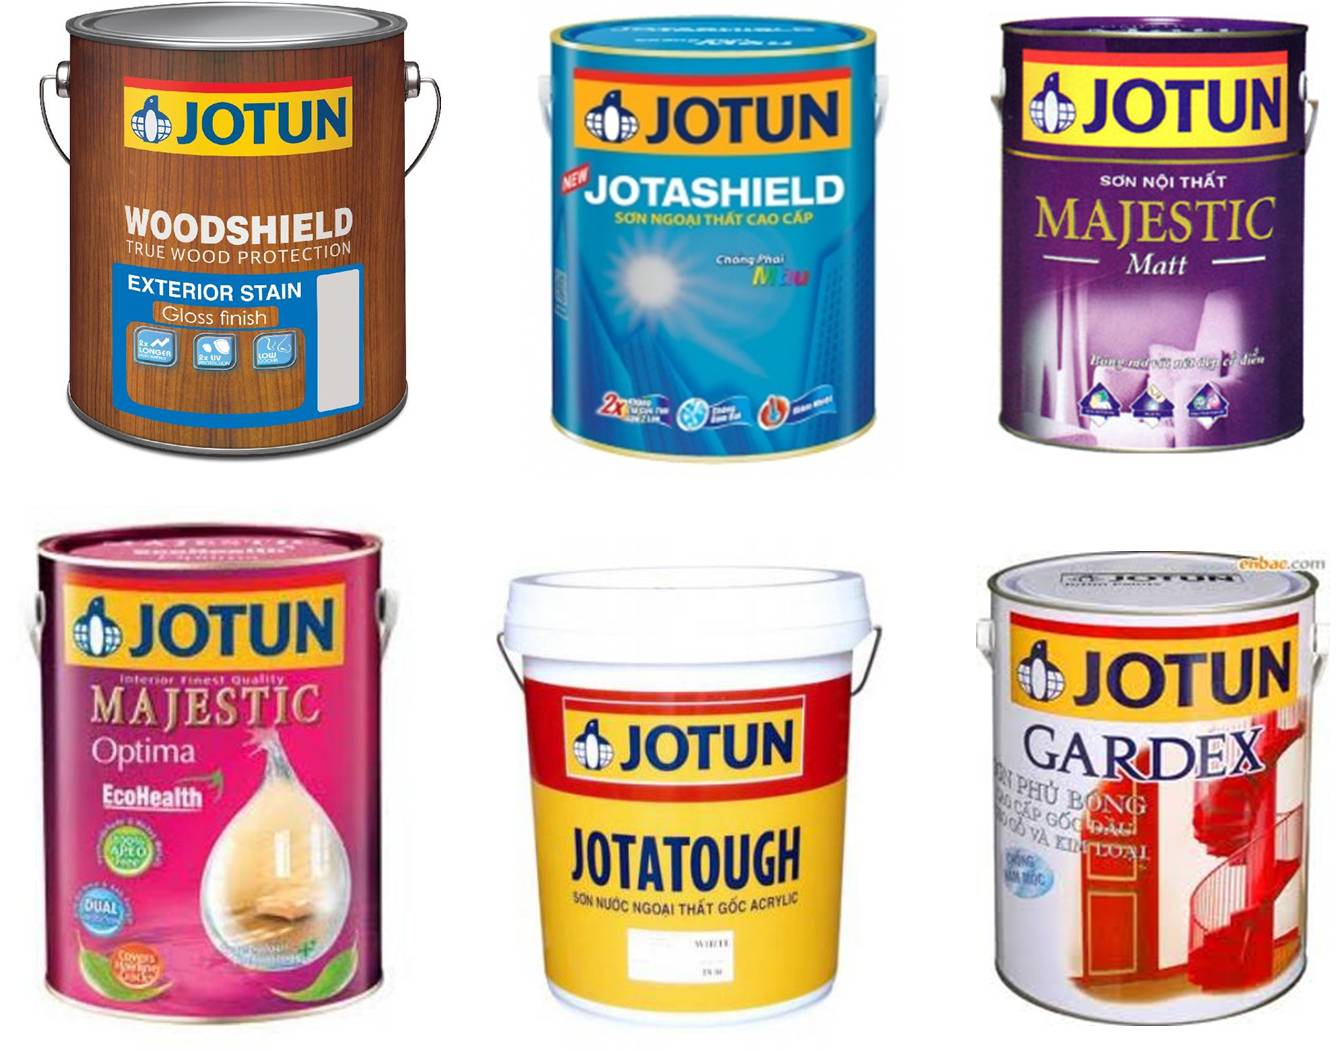 Sơn Jotun là thương hiệu nổi tiếng về sơn cao cấp với nhiều loại sản phẩm khác nhau, phù hợp với tất cả các mục đích sơn như sơn tường, sơn gỗ, sơn kim loại... Hãy truy cập ngay để khám phá sản phẩm và nhận được những ưu đãi hấp dẫn.